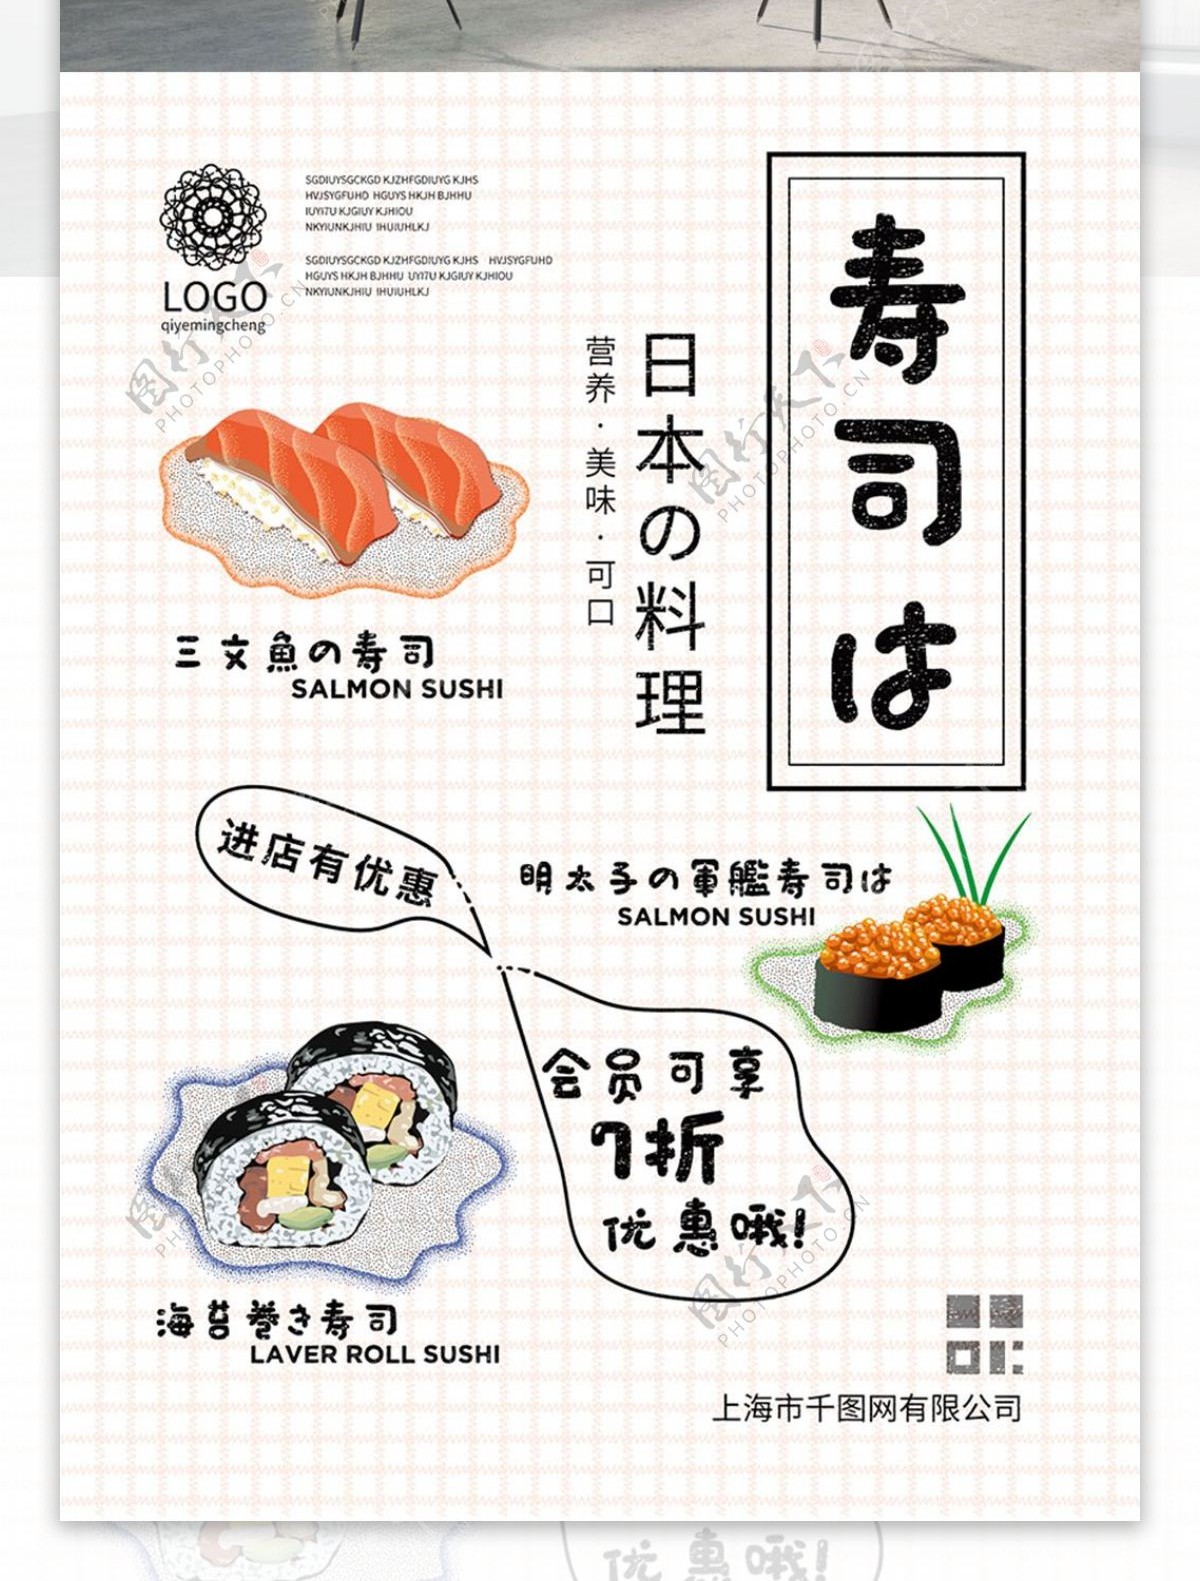 原创小清新日本料理寿司插画美食海报招贴